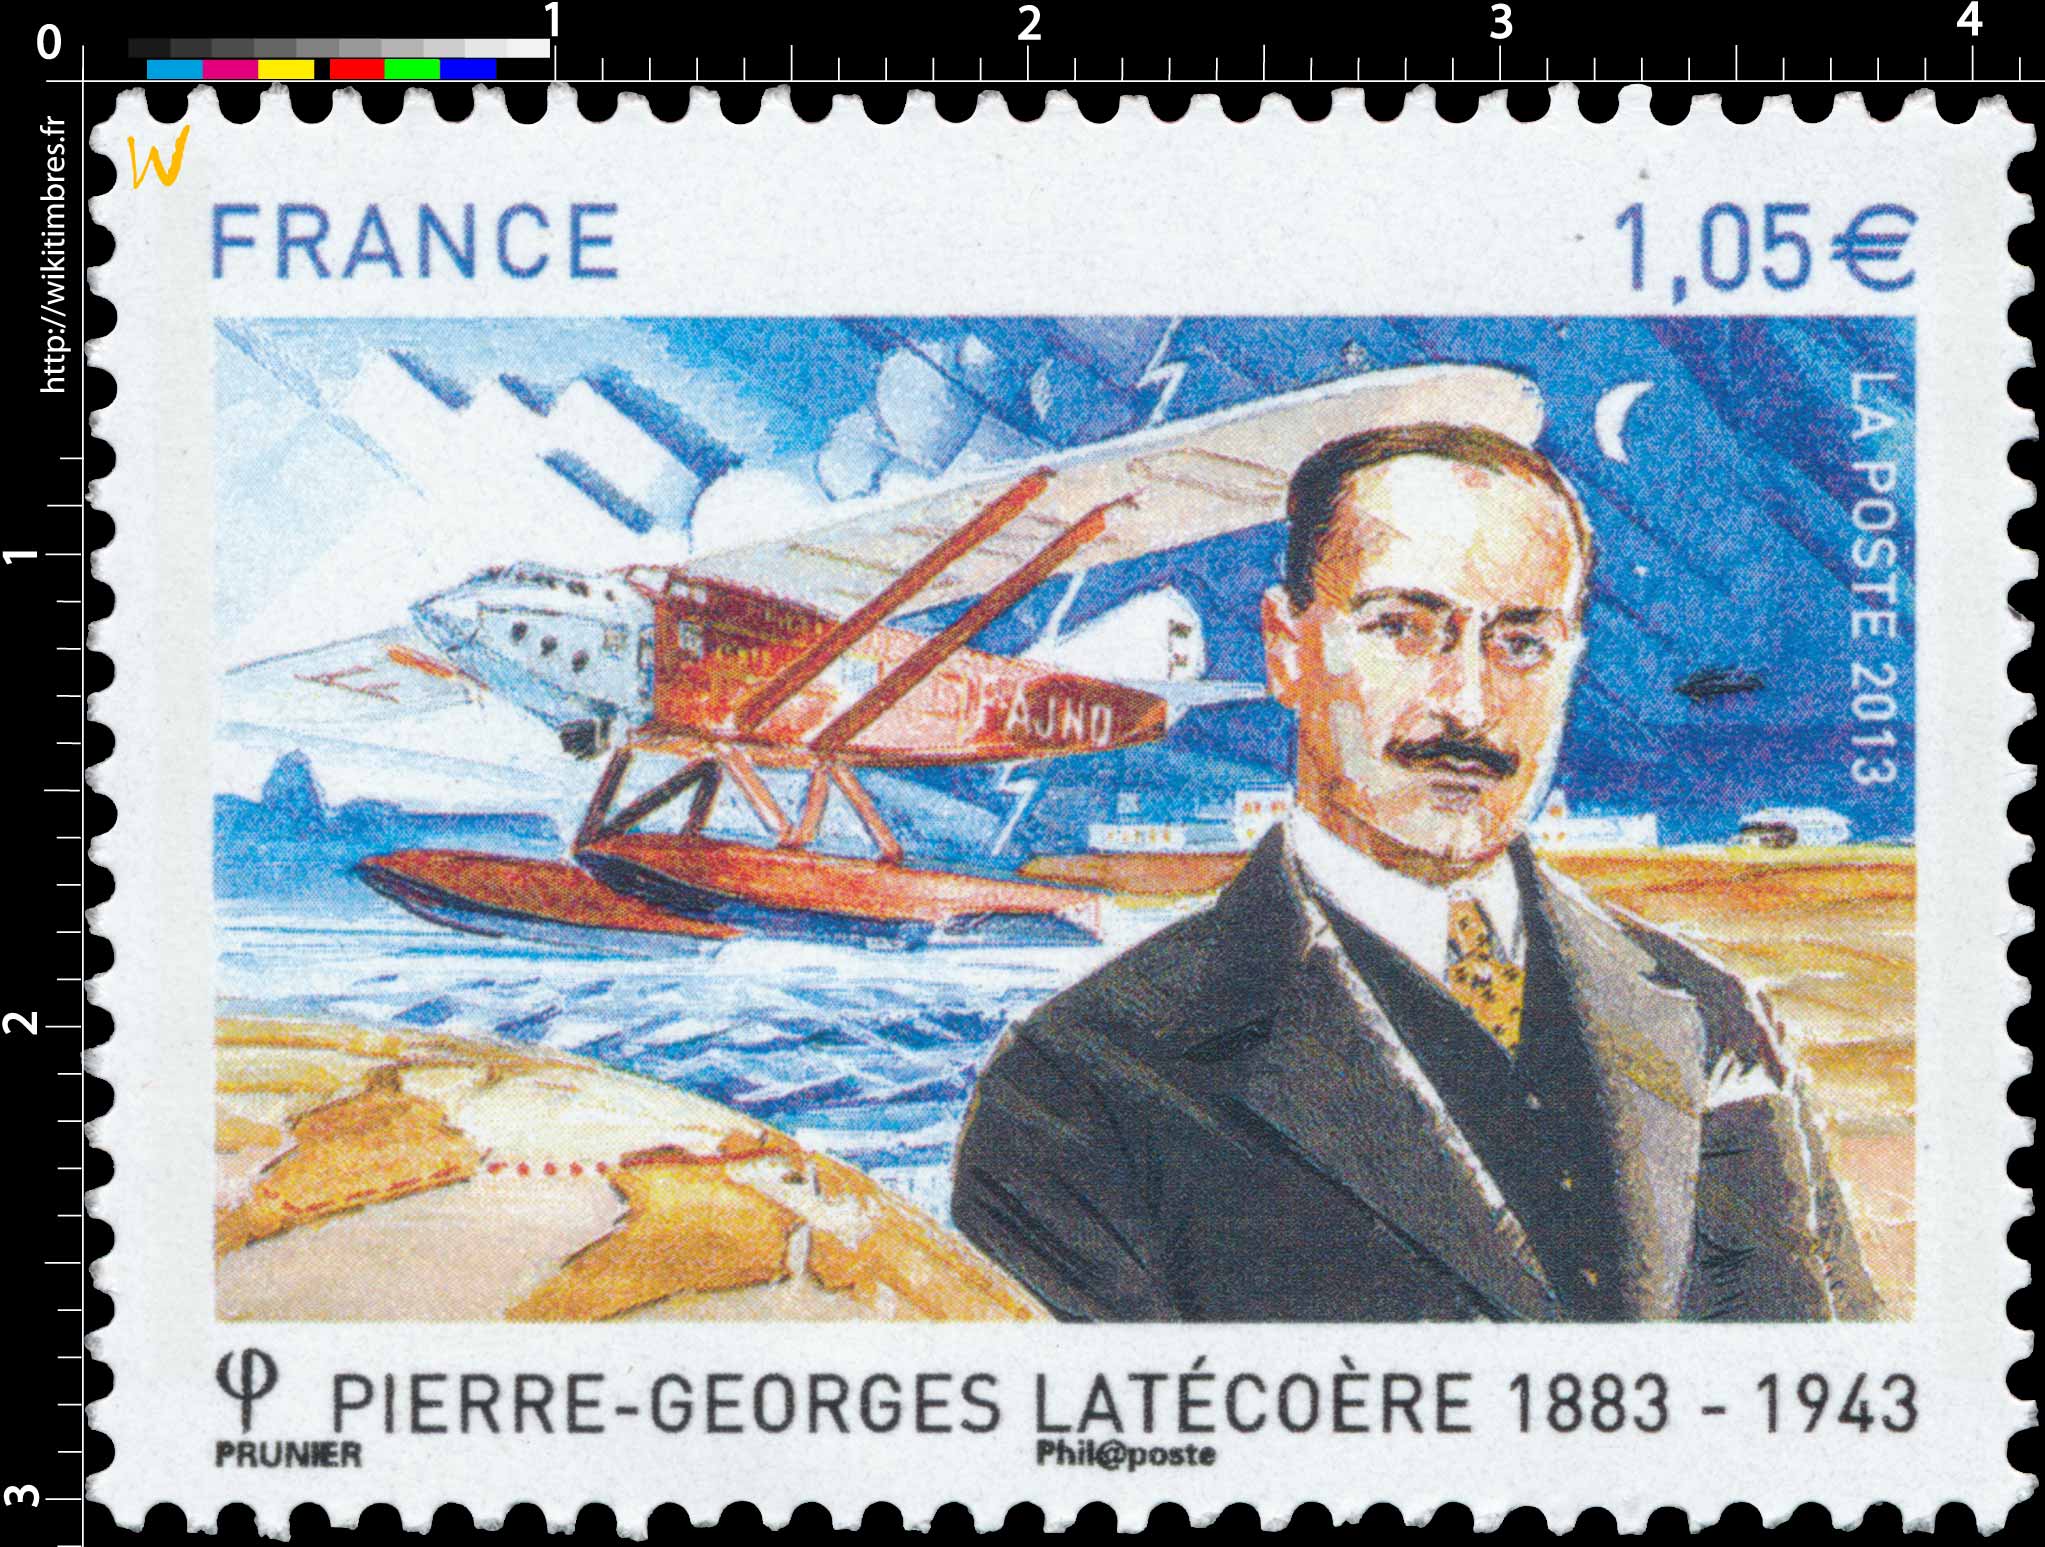 2013 Pierre-Georges Latécoère 1883-1943